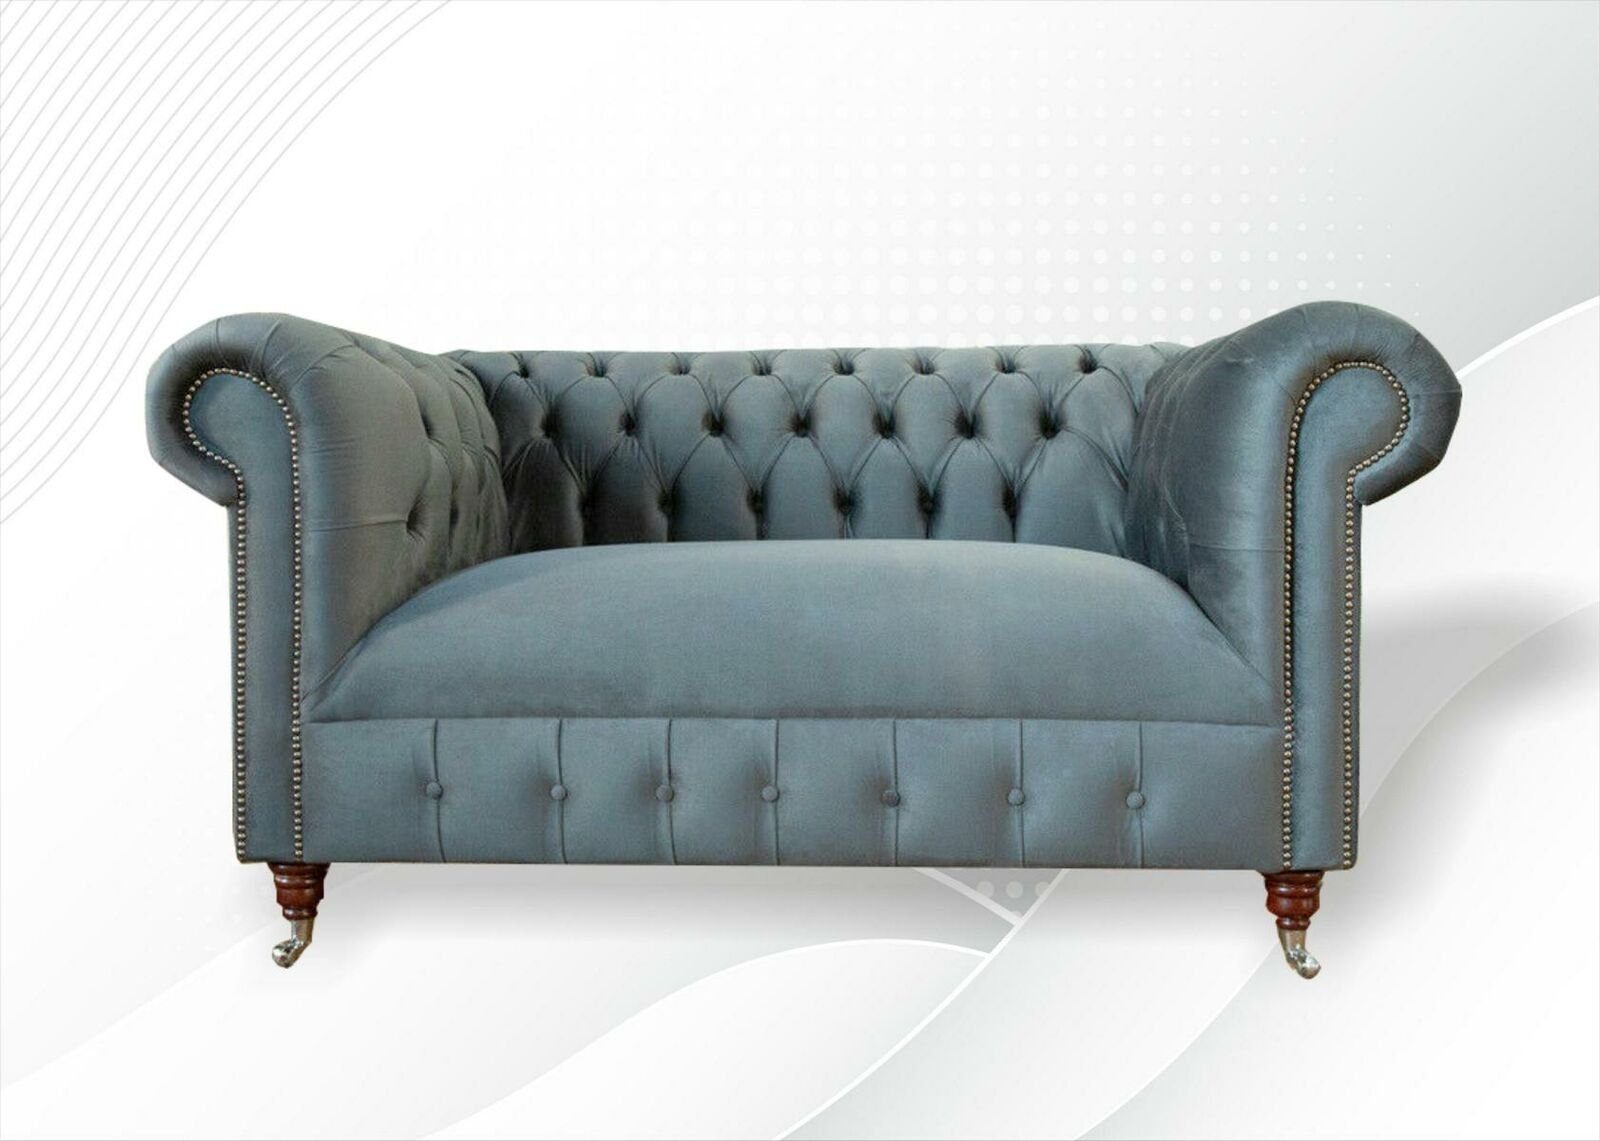 JVmoebel Sofa, Chesterfield Sofa Luxus Möbel Zweisitzer Couchen Sofas Sitz Textil